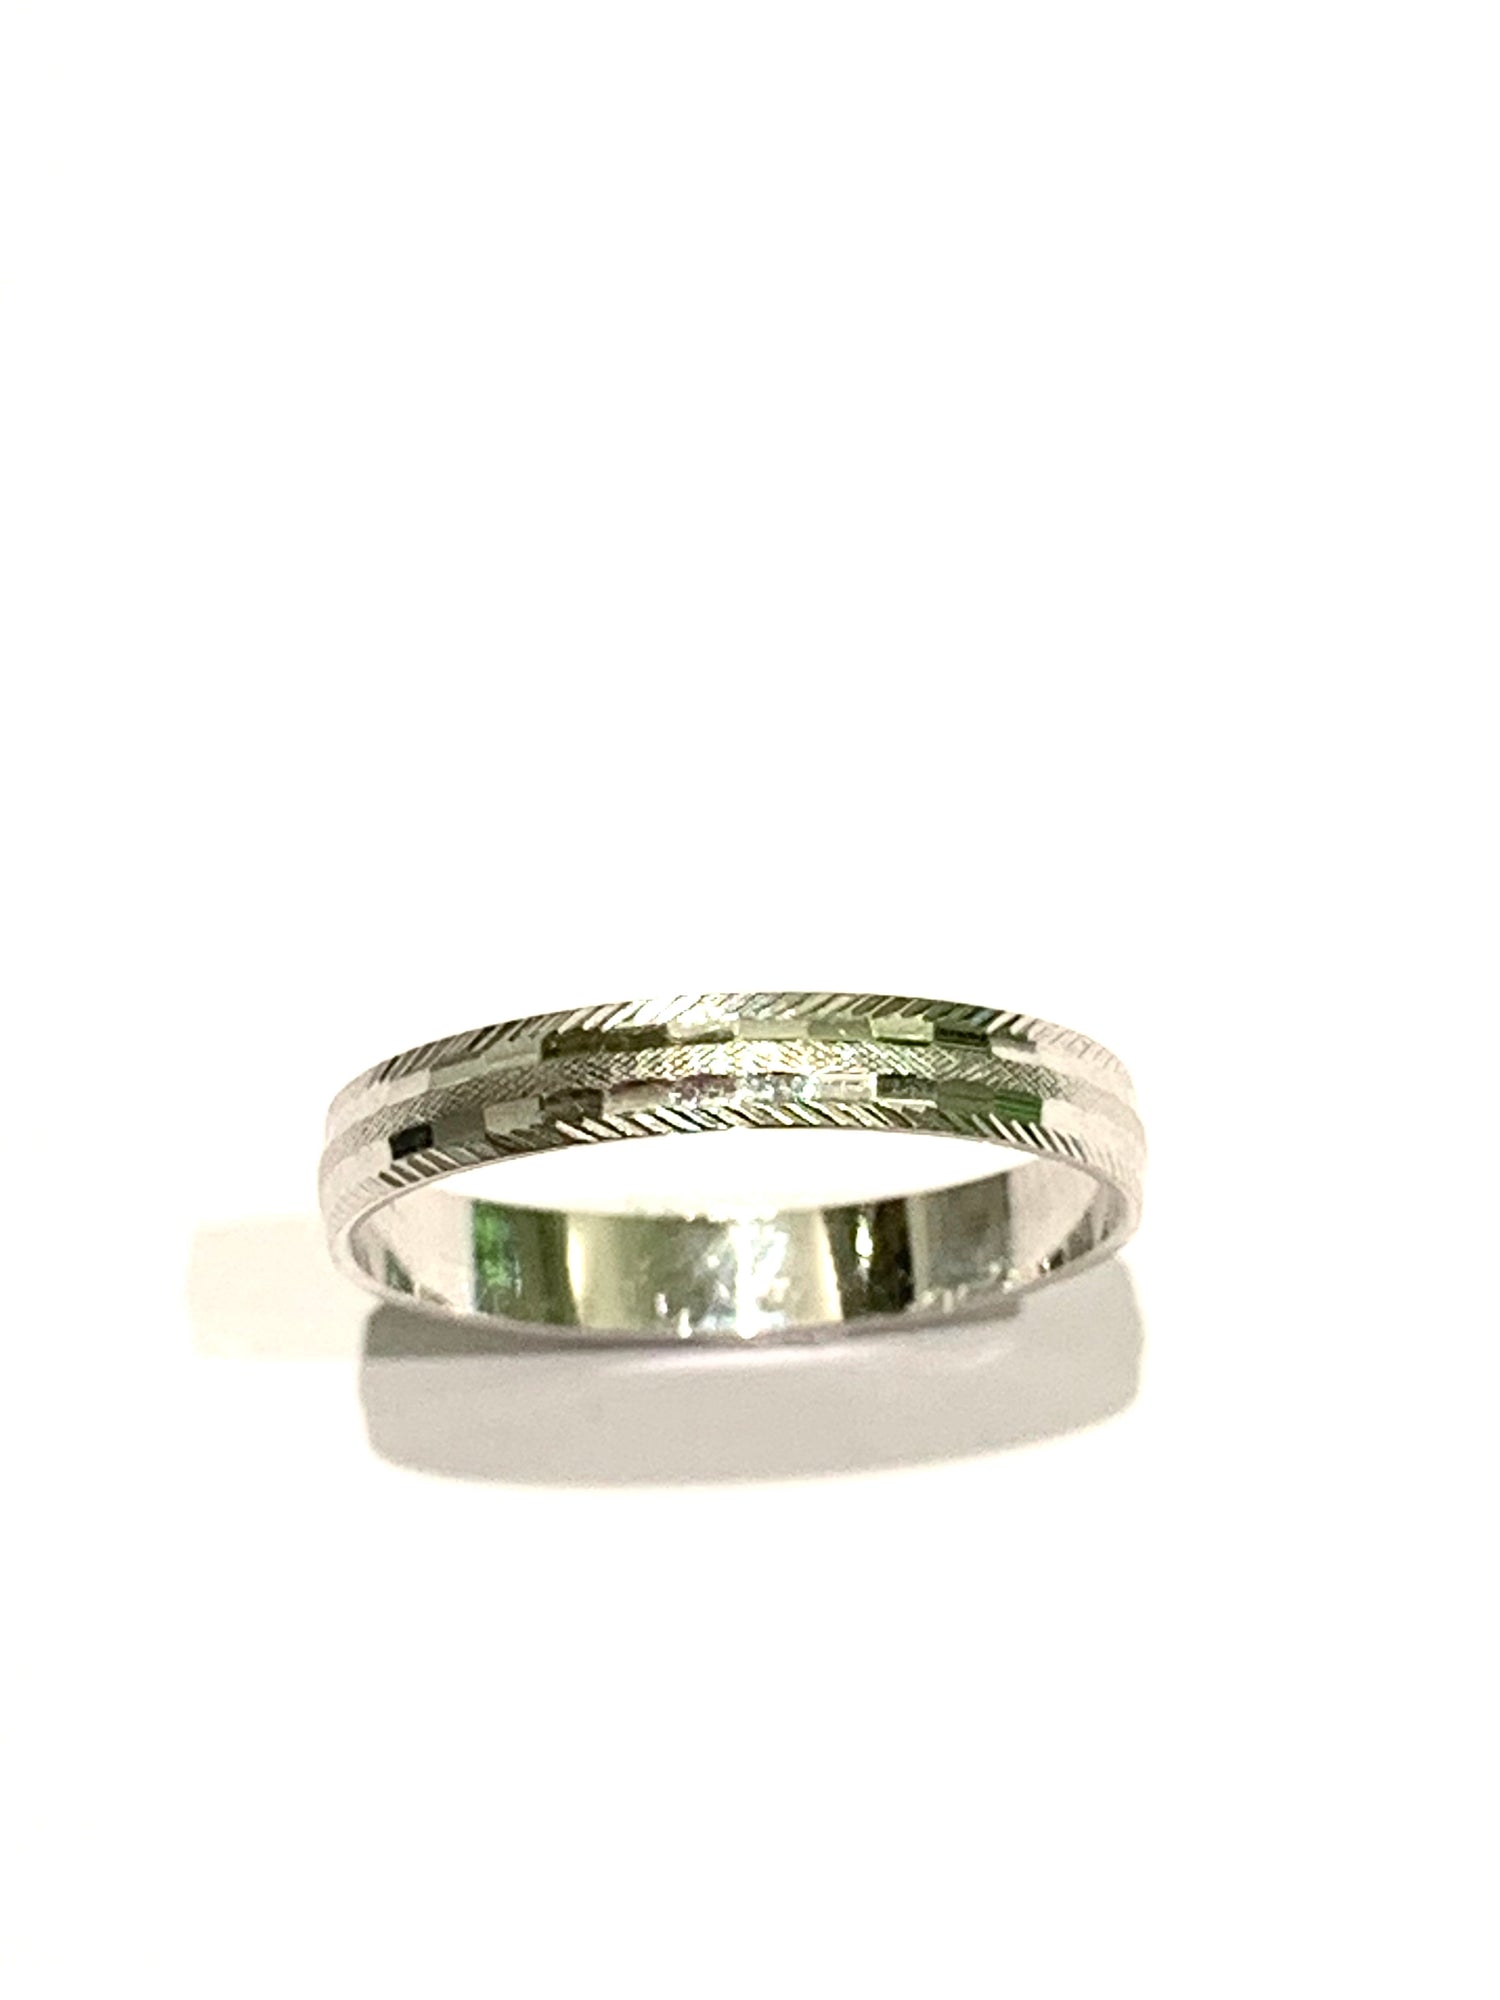 Anello fedina in oro bianco 18kt con disegni satinati.  Dimensione parte superiore anello 0,3 cm.  Disponibili più misure.